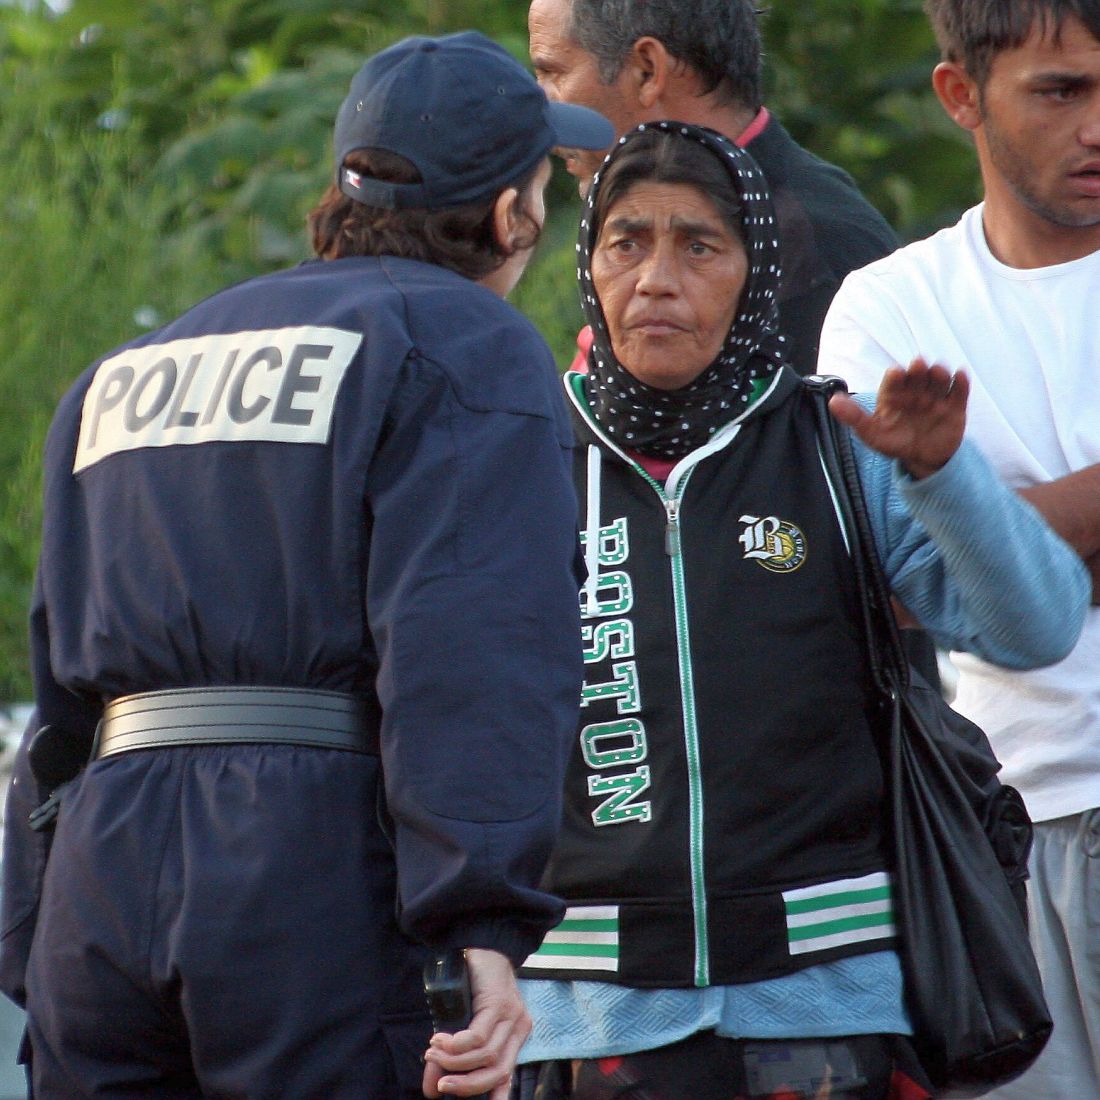 Ромите имигранти във Франция са 15 000-20 000 души